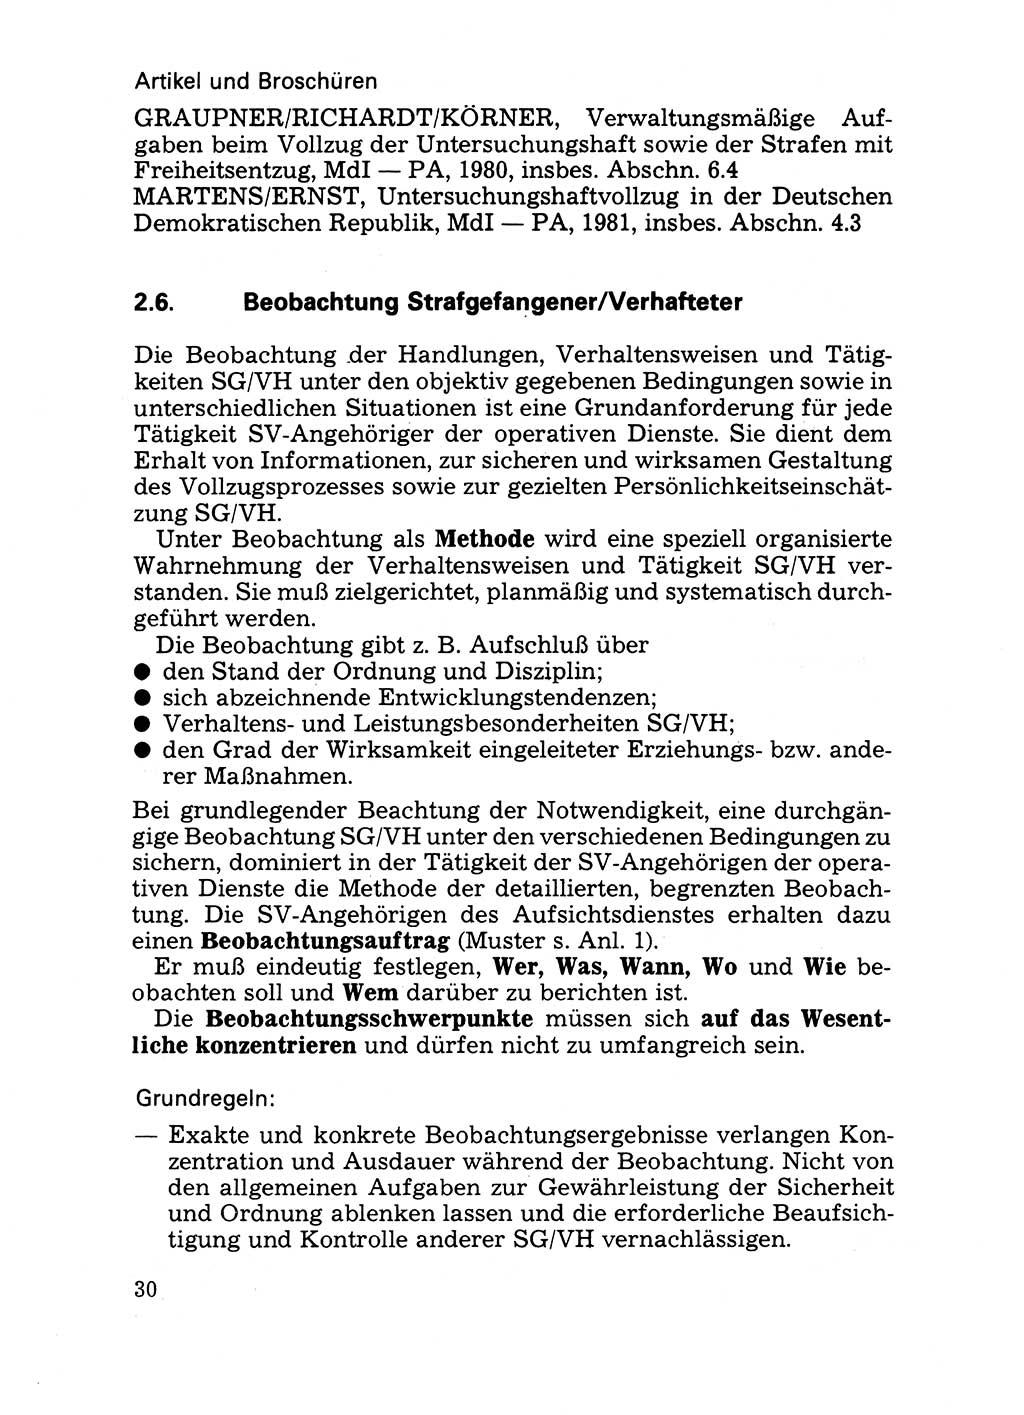 Handbuch für operative Dienste, Abteilung Strafvollzug (SV) [Ministerium des Innern (MdI) Deutsche Demokratische Republik (DDR)] 1981, Seite 30 (Hb. op. D. Abt. SV MdI DDR 1981, S. 30)